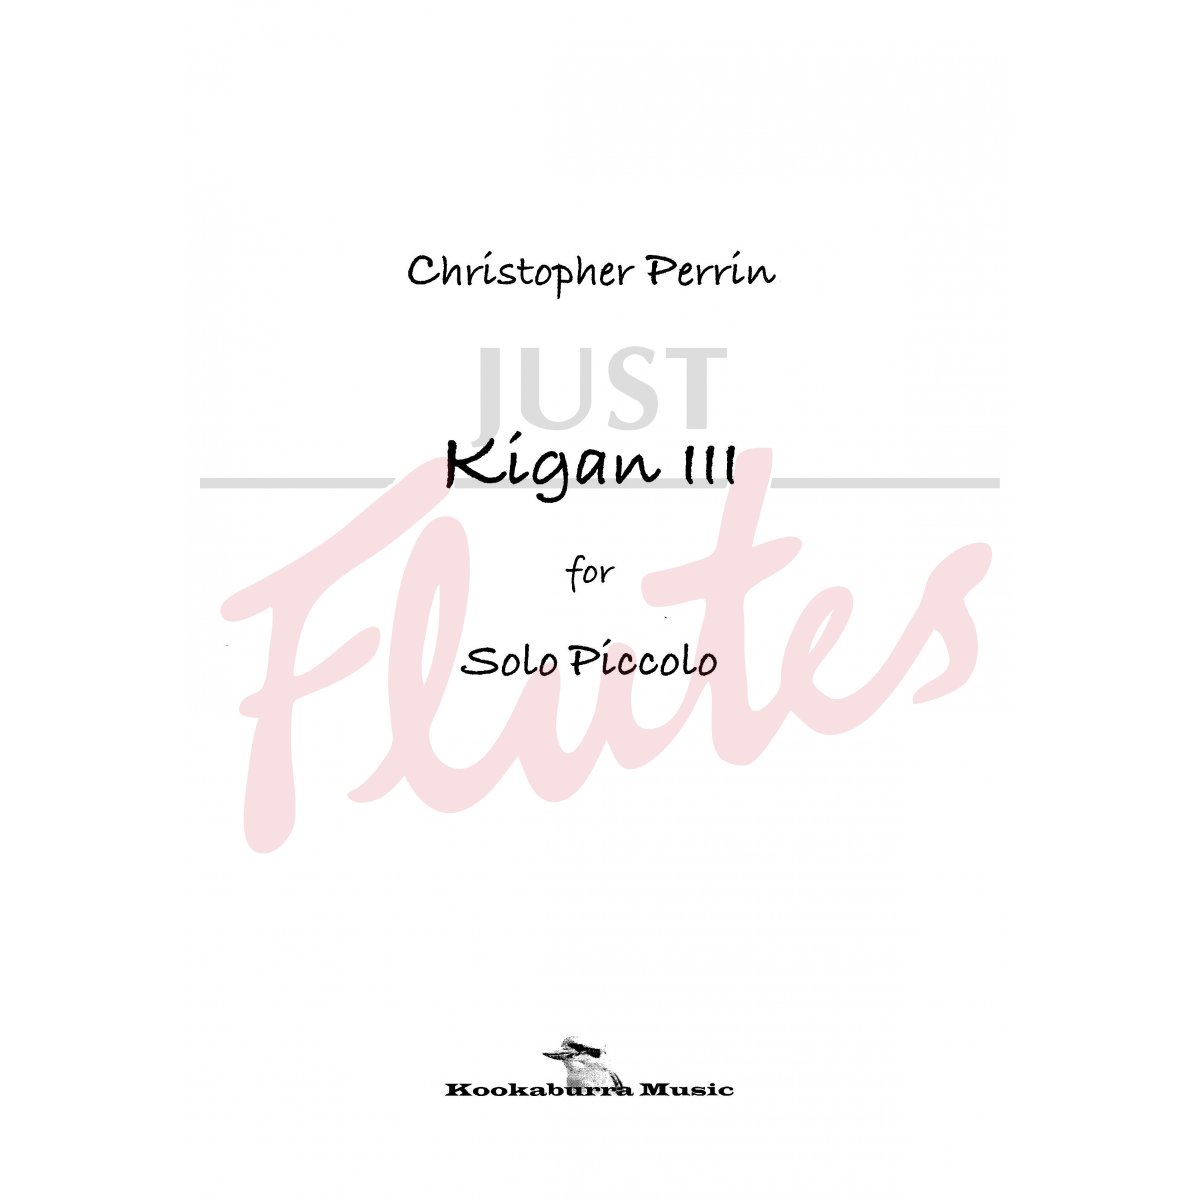 Kigan III for Solo Piccolo